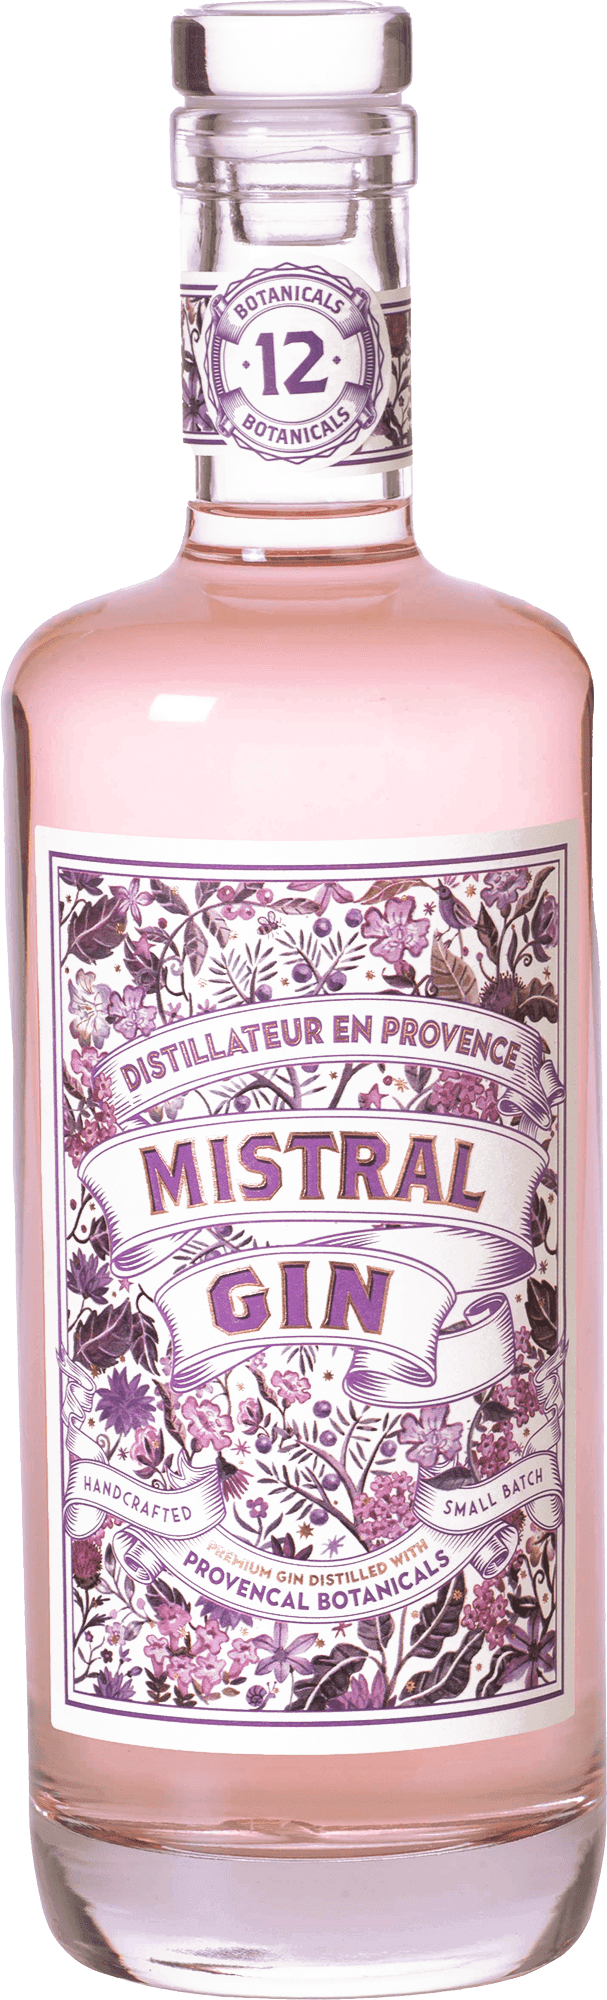 Mistral Rose Gin